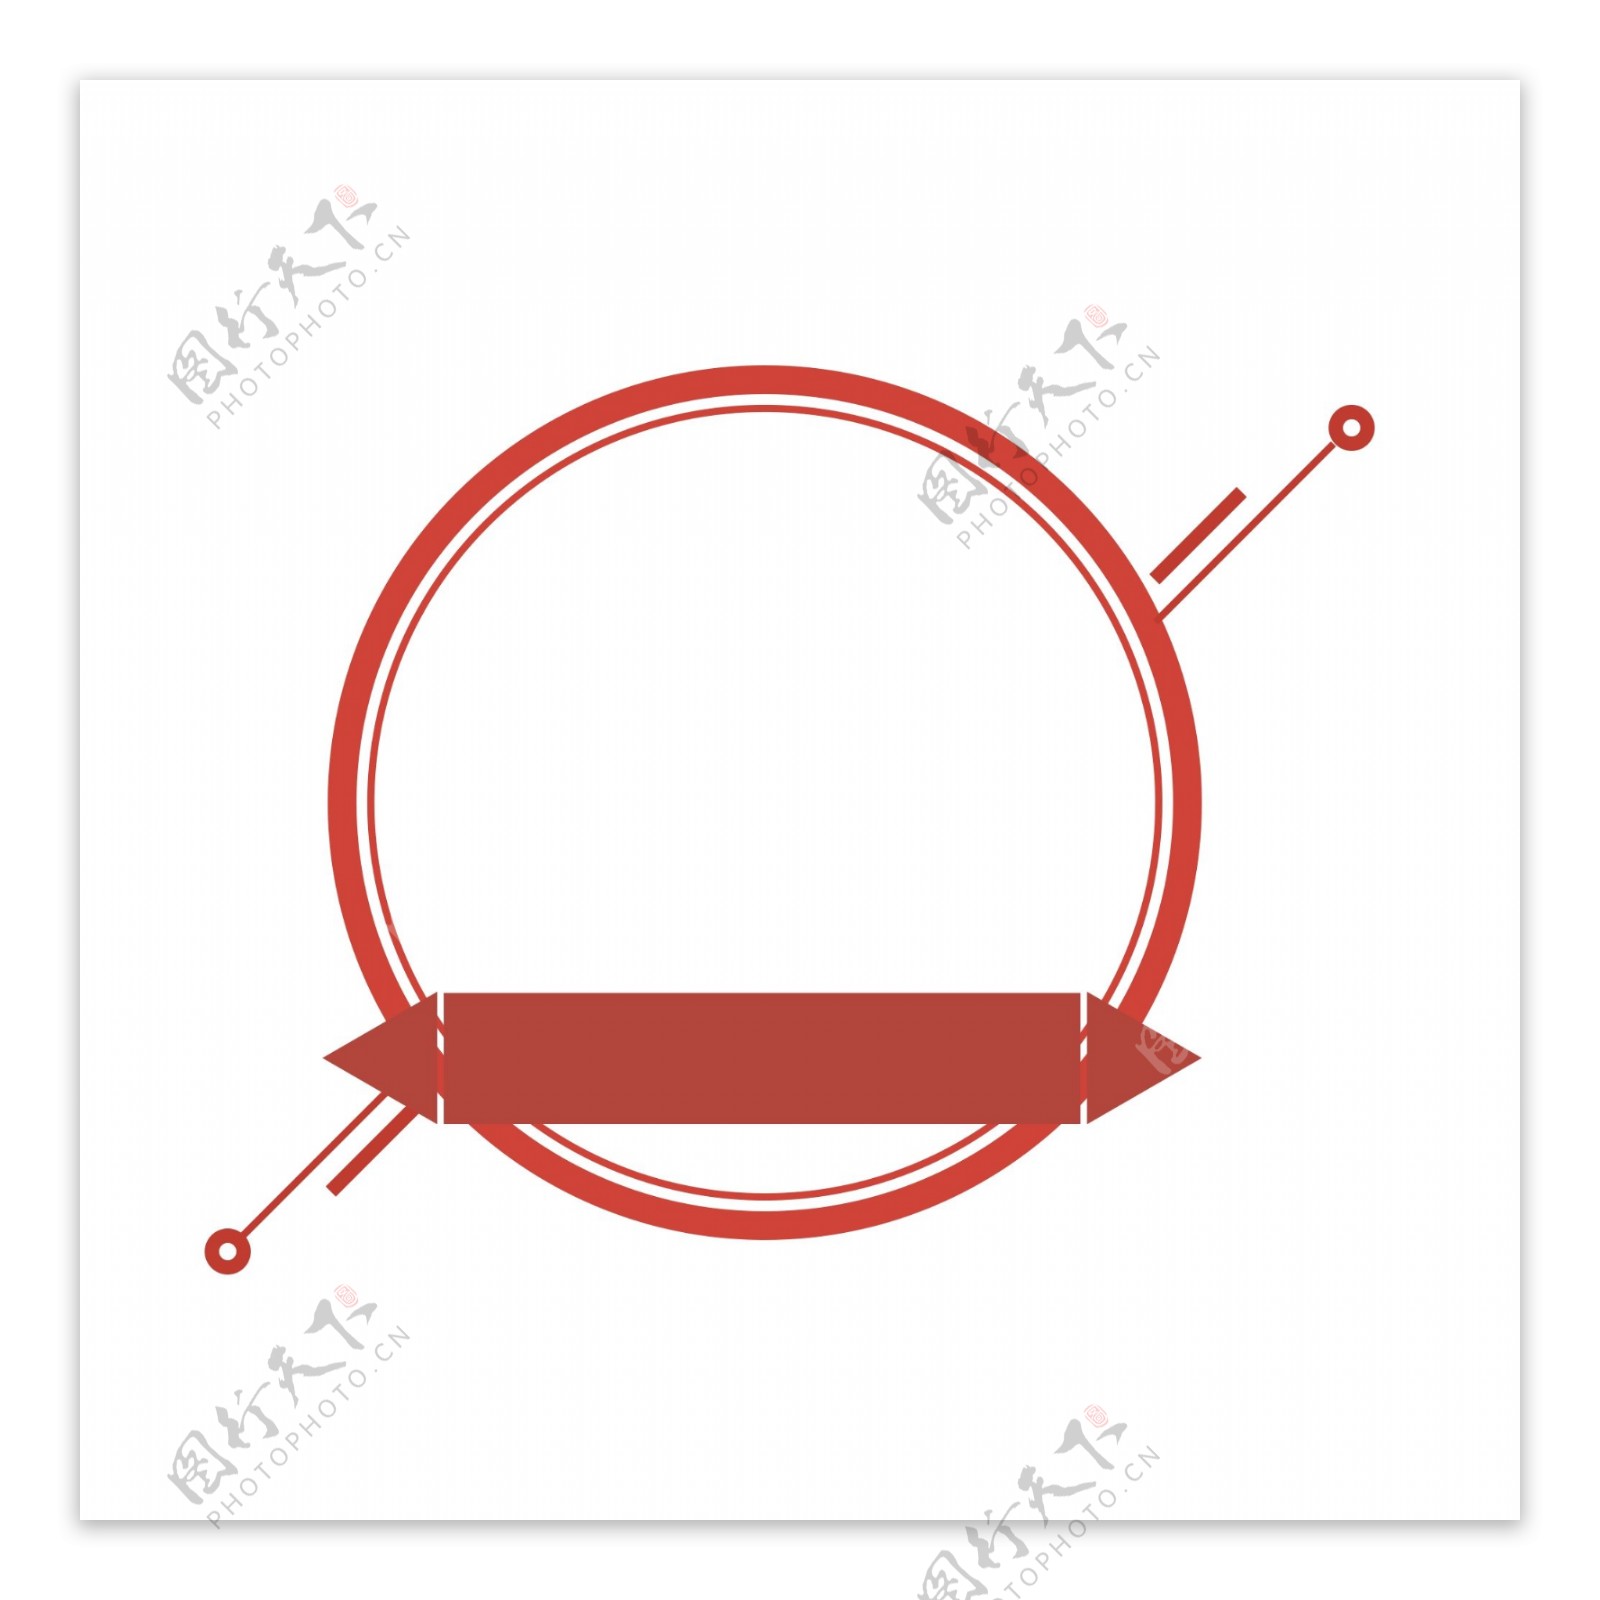 红色圆圈和直线和矩形组成的边框